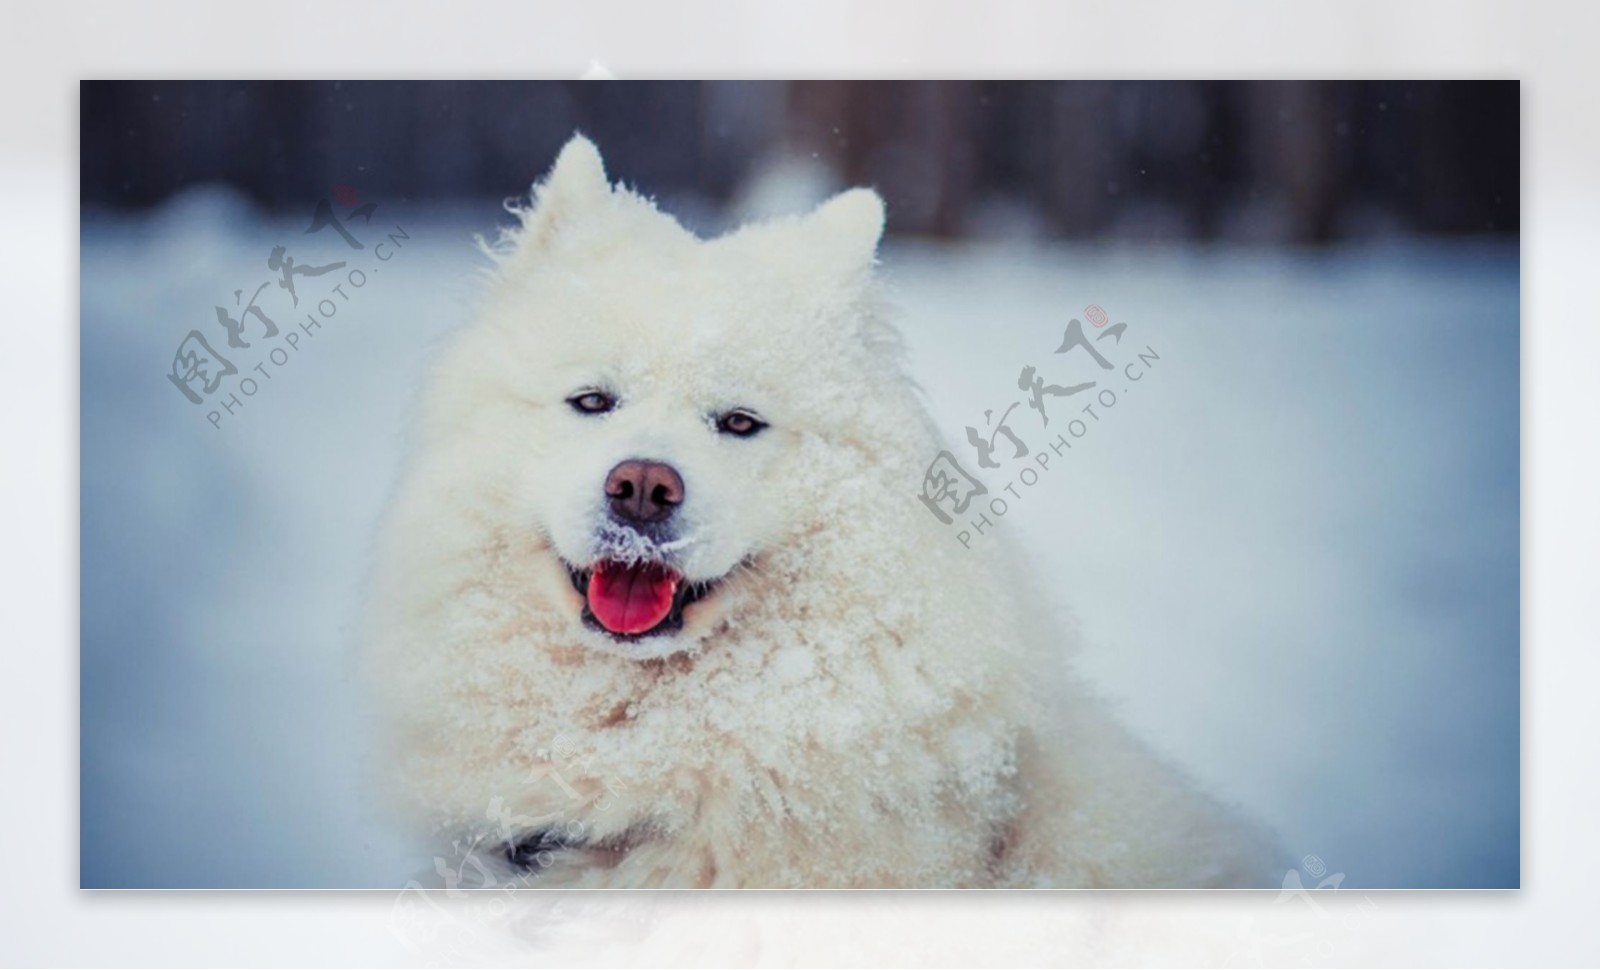 壁纸1280×800可爱白色小狗狗图片 1920 1200壁纸,毛茸茸小狗狗写真壁纸壁纸图片-动物壁纸-动物图片素材-桌面壁纸